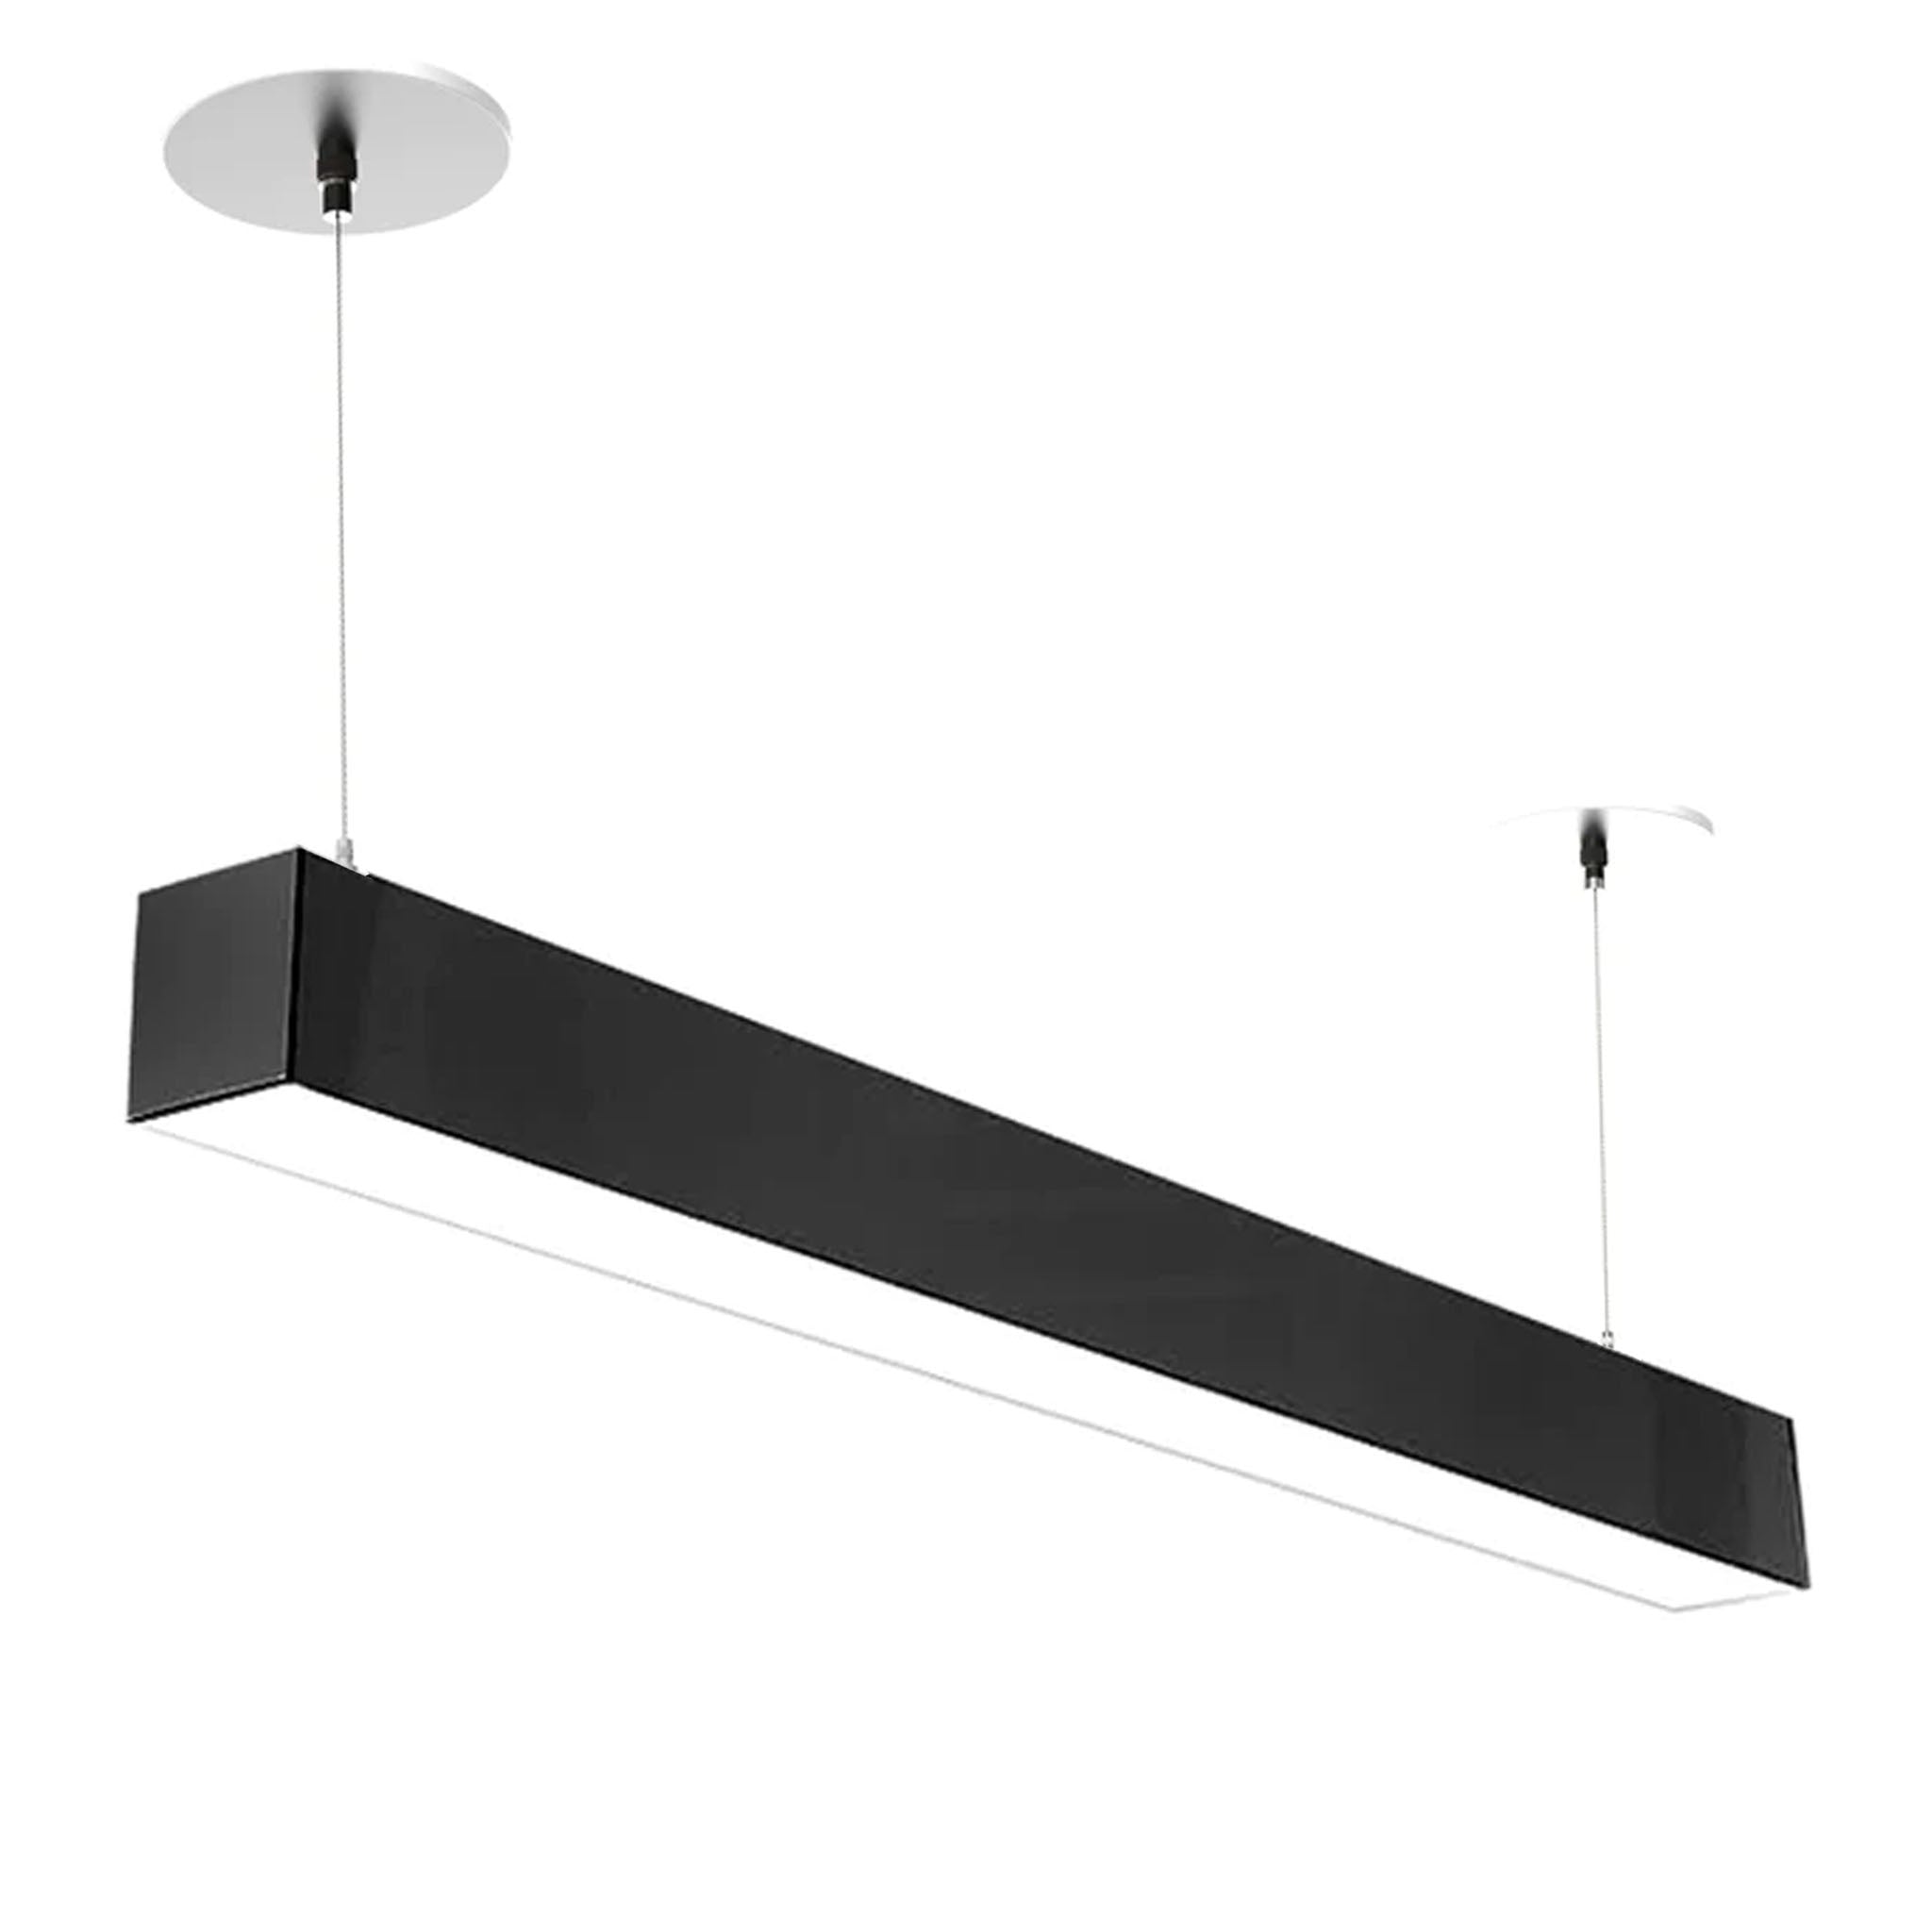 Linear LED Lighting | Suspended LED Lighting Linear LED Light Fixtures | Warehouse-Lighting.com